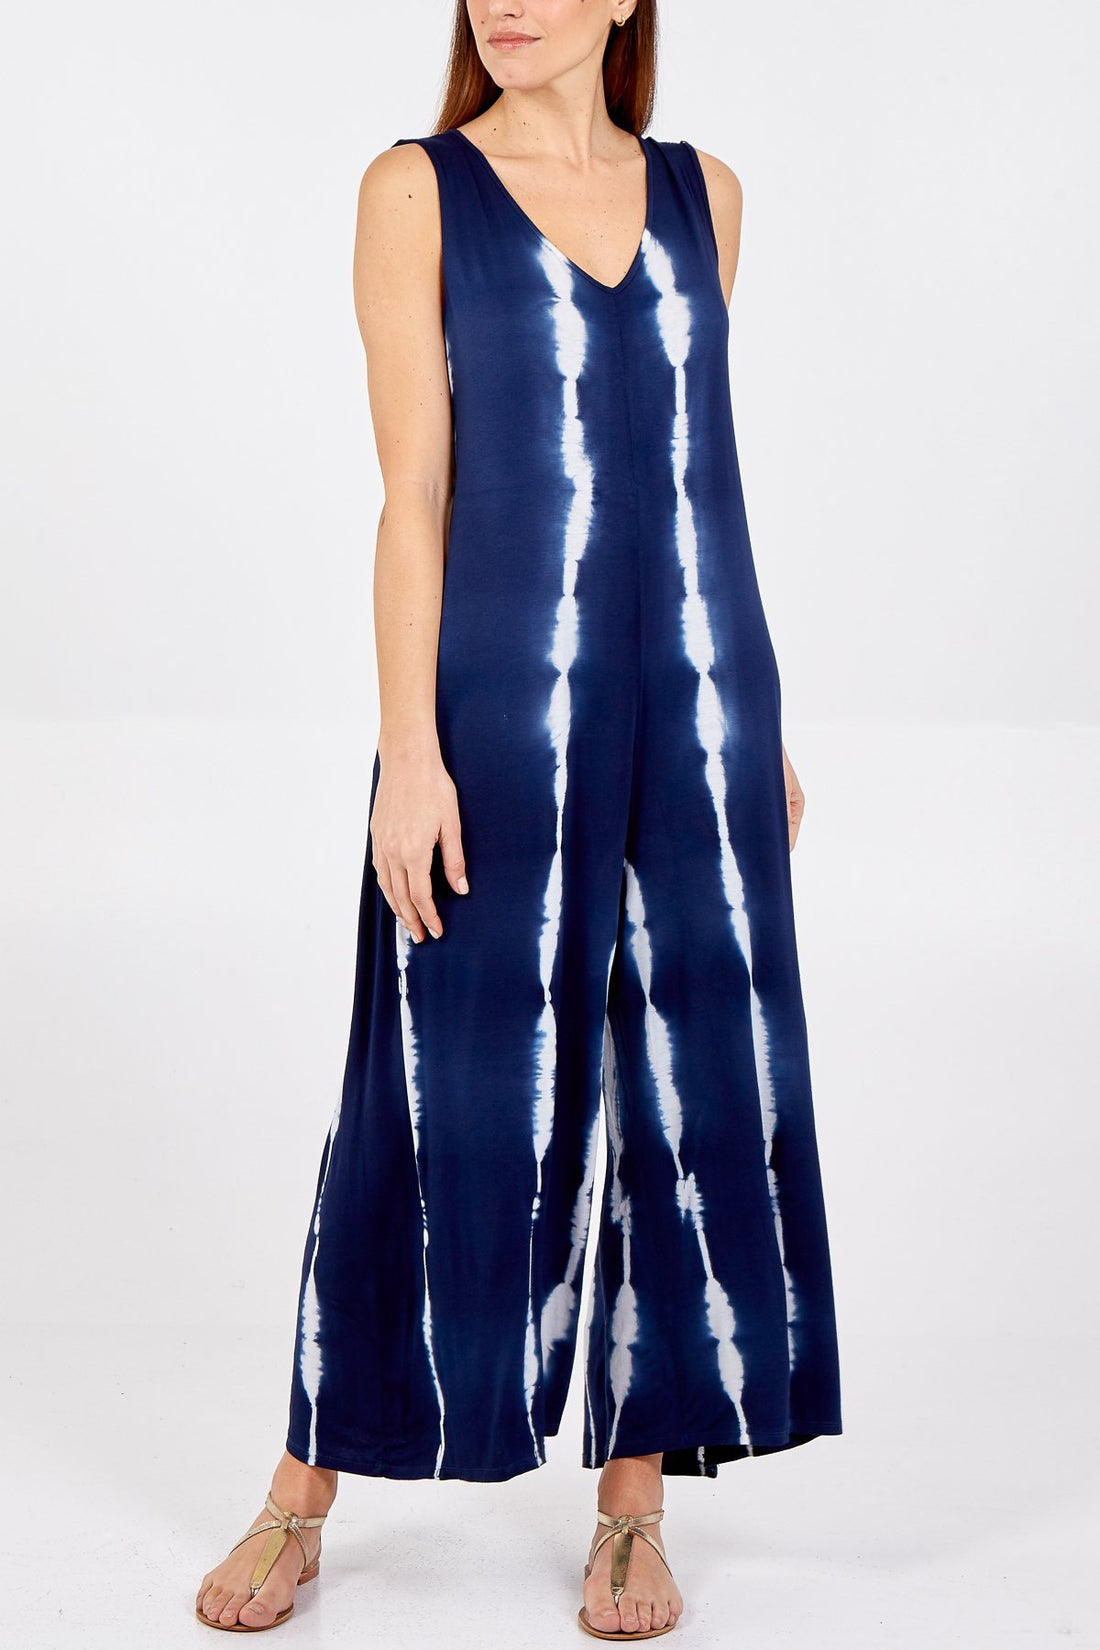 Lizzie - Oversized Tie Dye Print Jumpsuit - Pinstripe